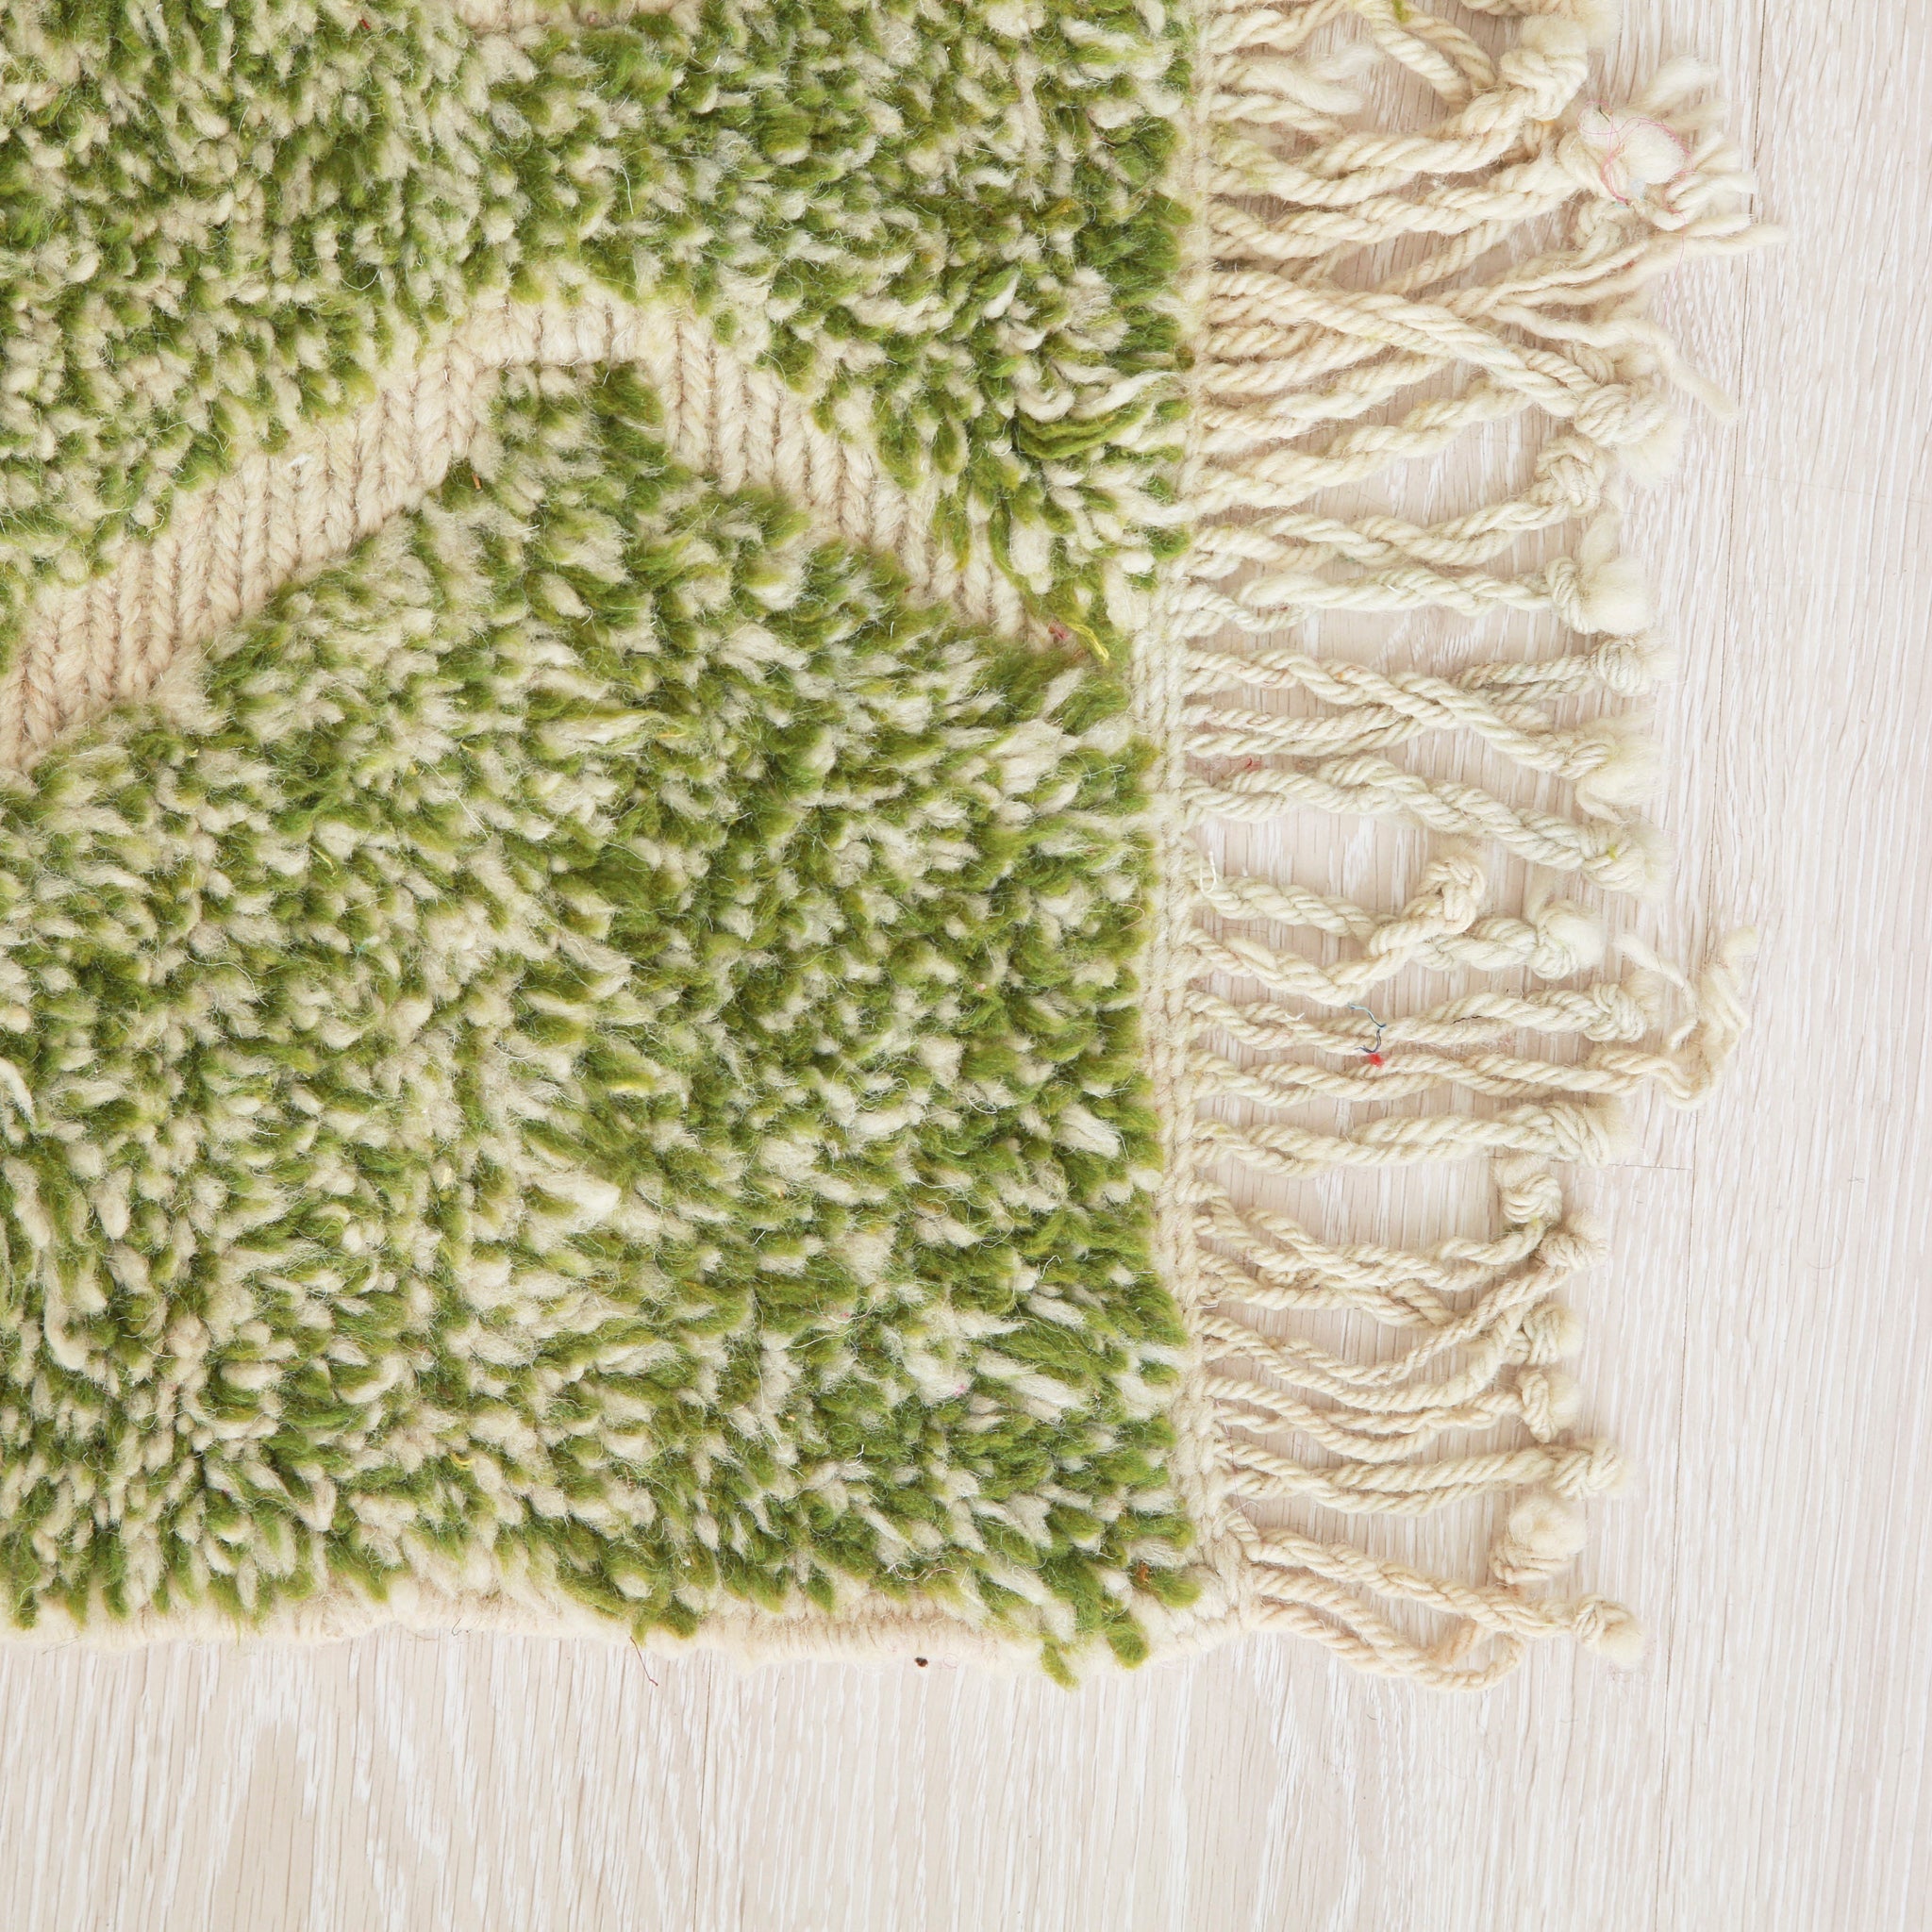 angolo di un tappeto beni mrirt realizzato a mano con lana in prevalenza verde